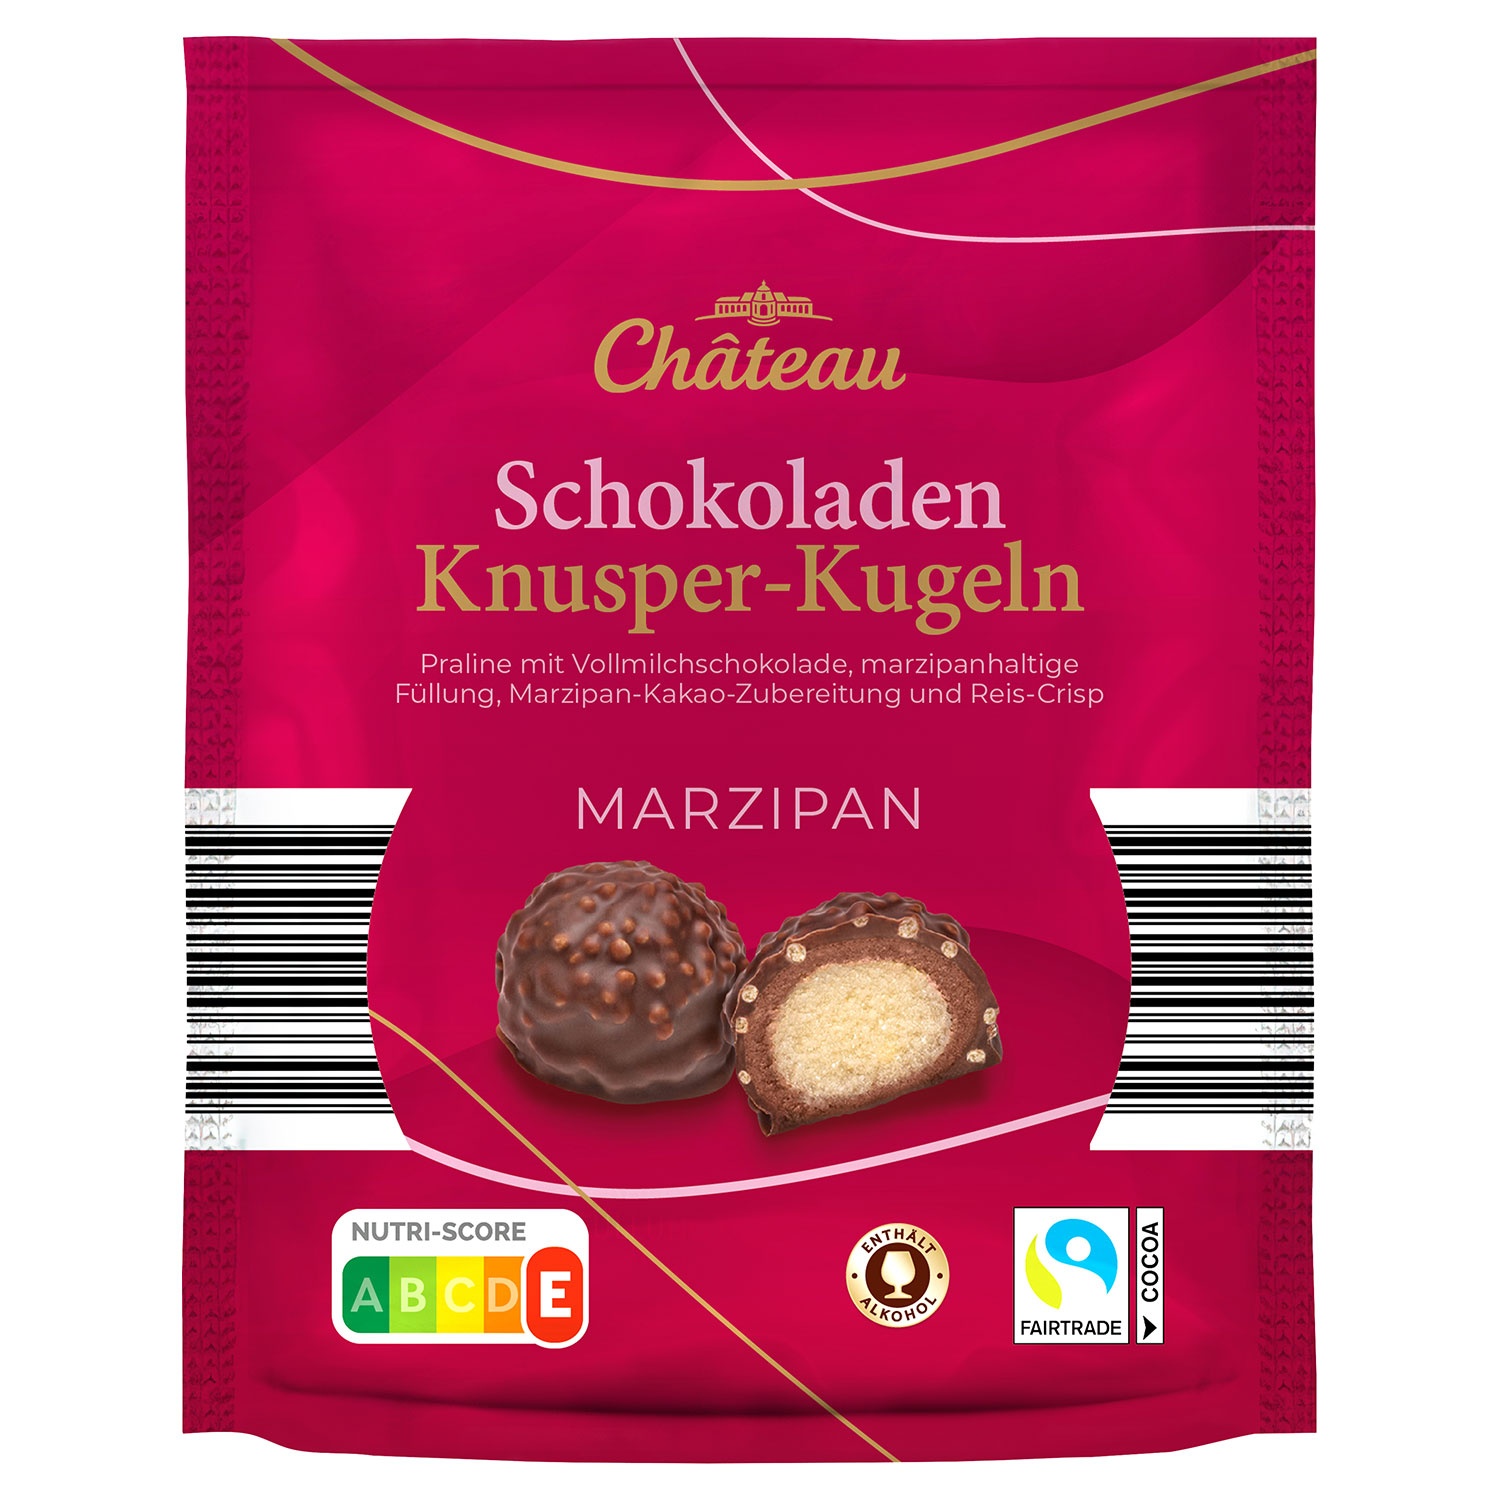 CHÂTEAU Schokoladen-Knusper-Kugeln 140 g